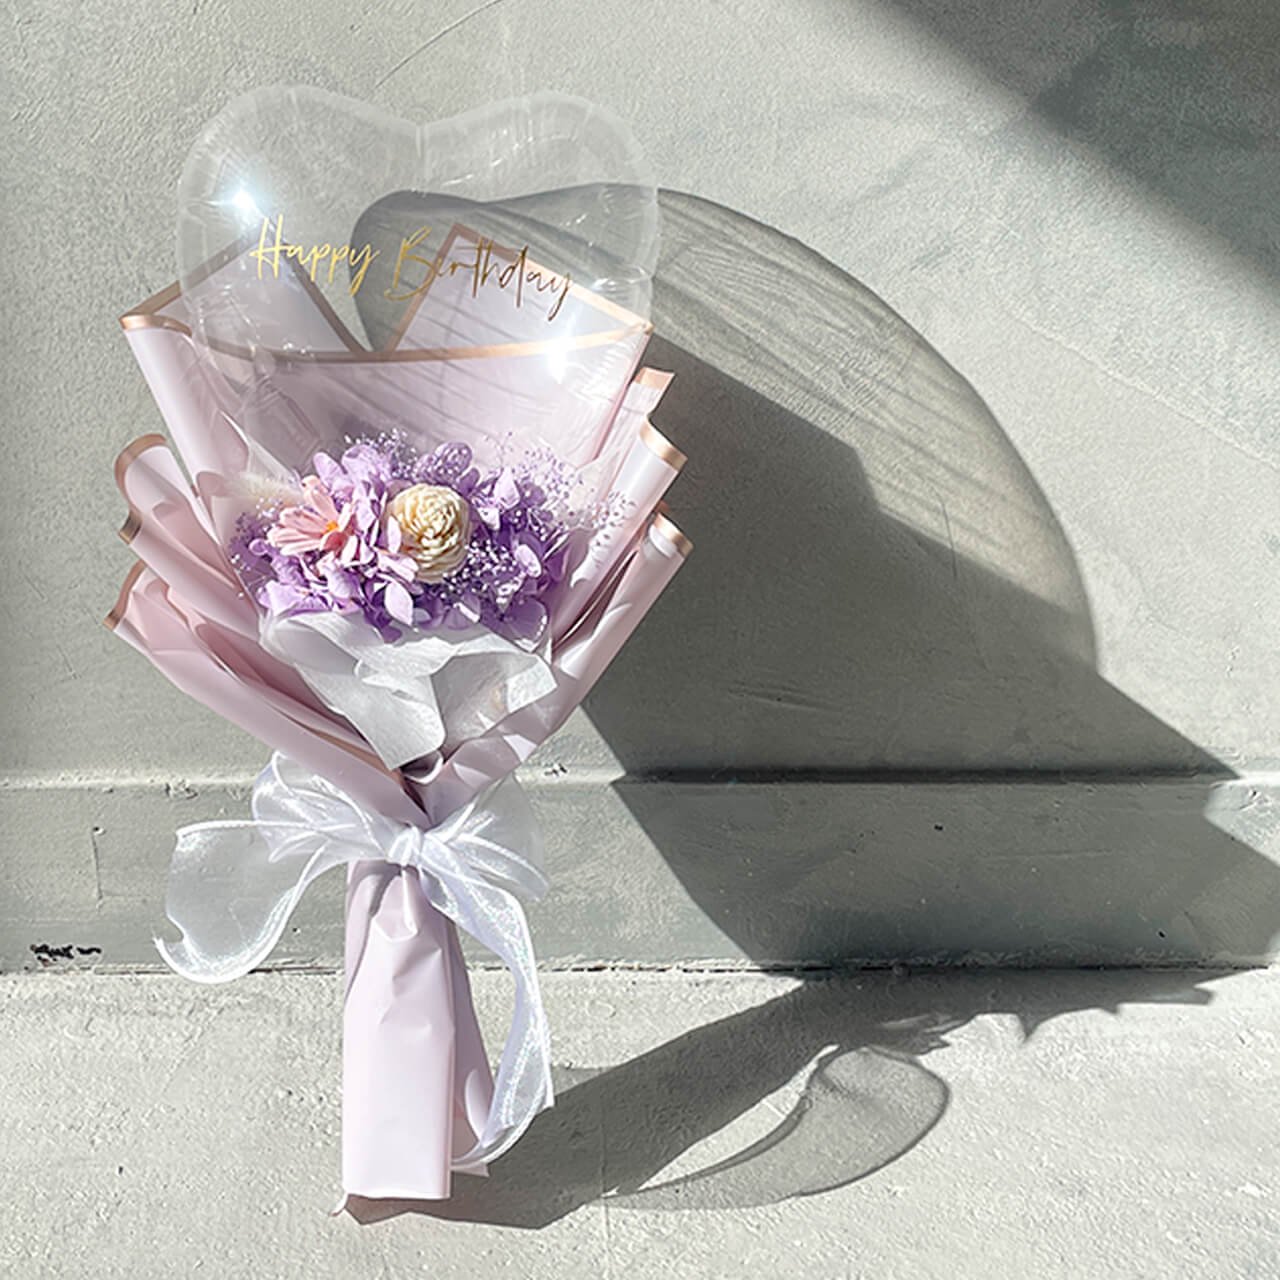 Charis Bouquet Purple - フラワーバルーンブーケ - 各種お祝いや卒業や入学のお祝いにギフトバルーン - チャビーバルーン 大阪  名古屋 滋賀にあるおしゃれなバルーン電報 バルーン装飾 バルーンギフトのことならチャビーバルーン